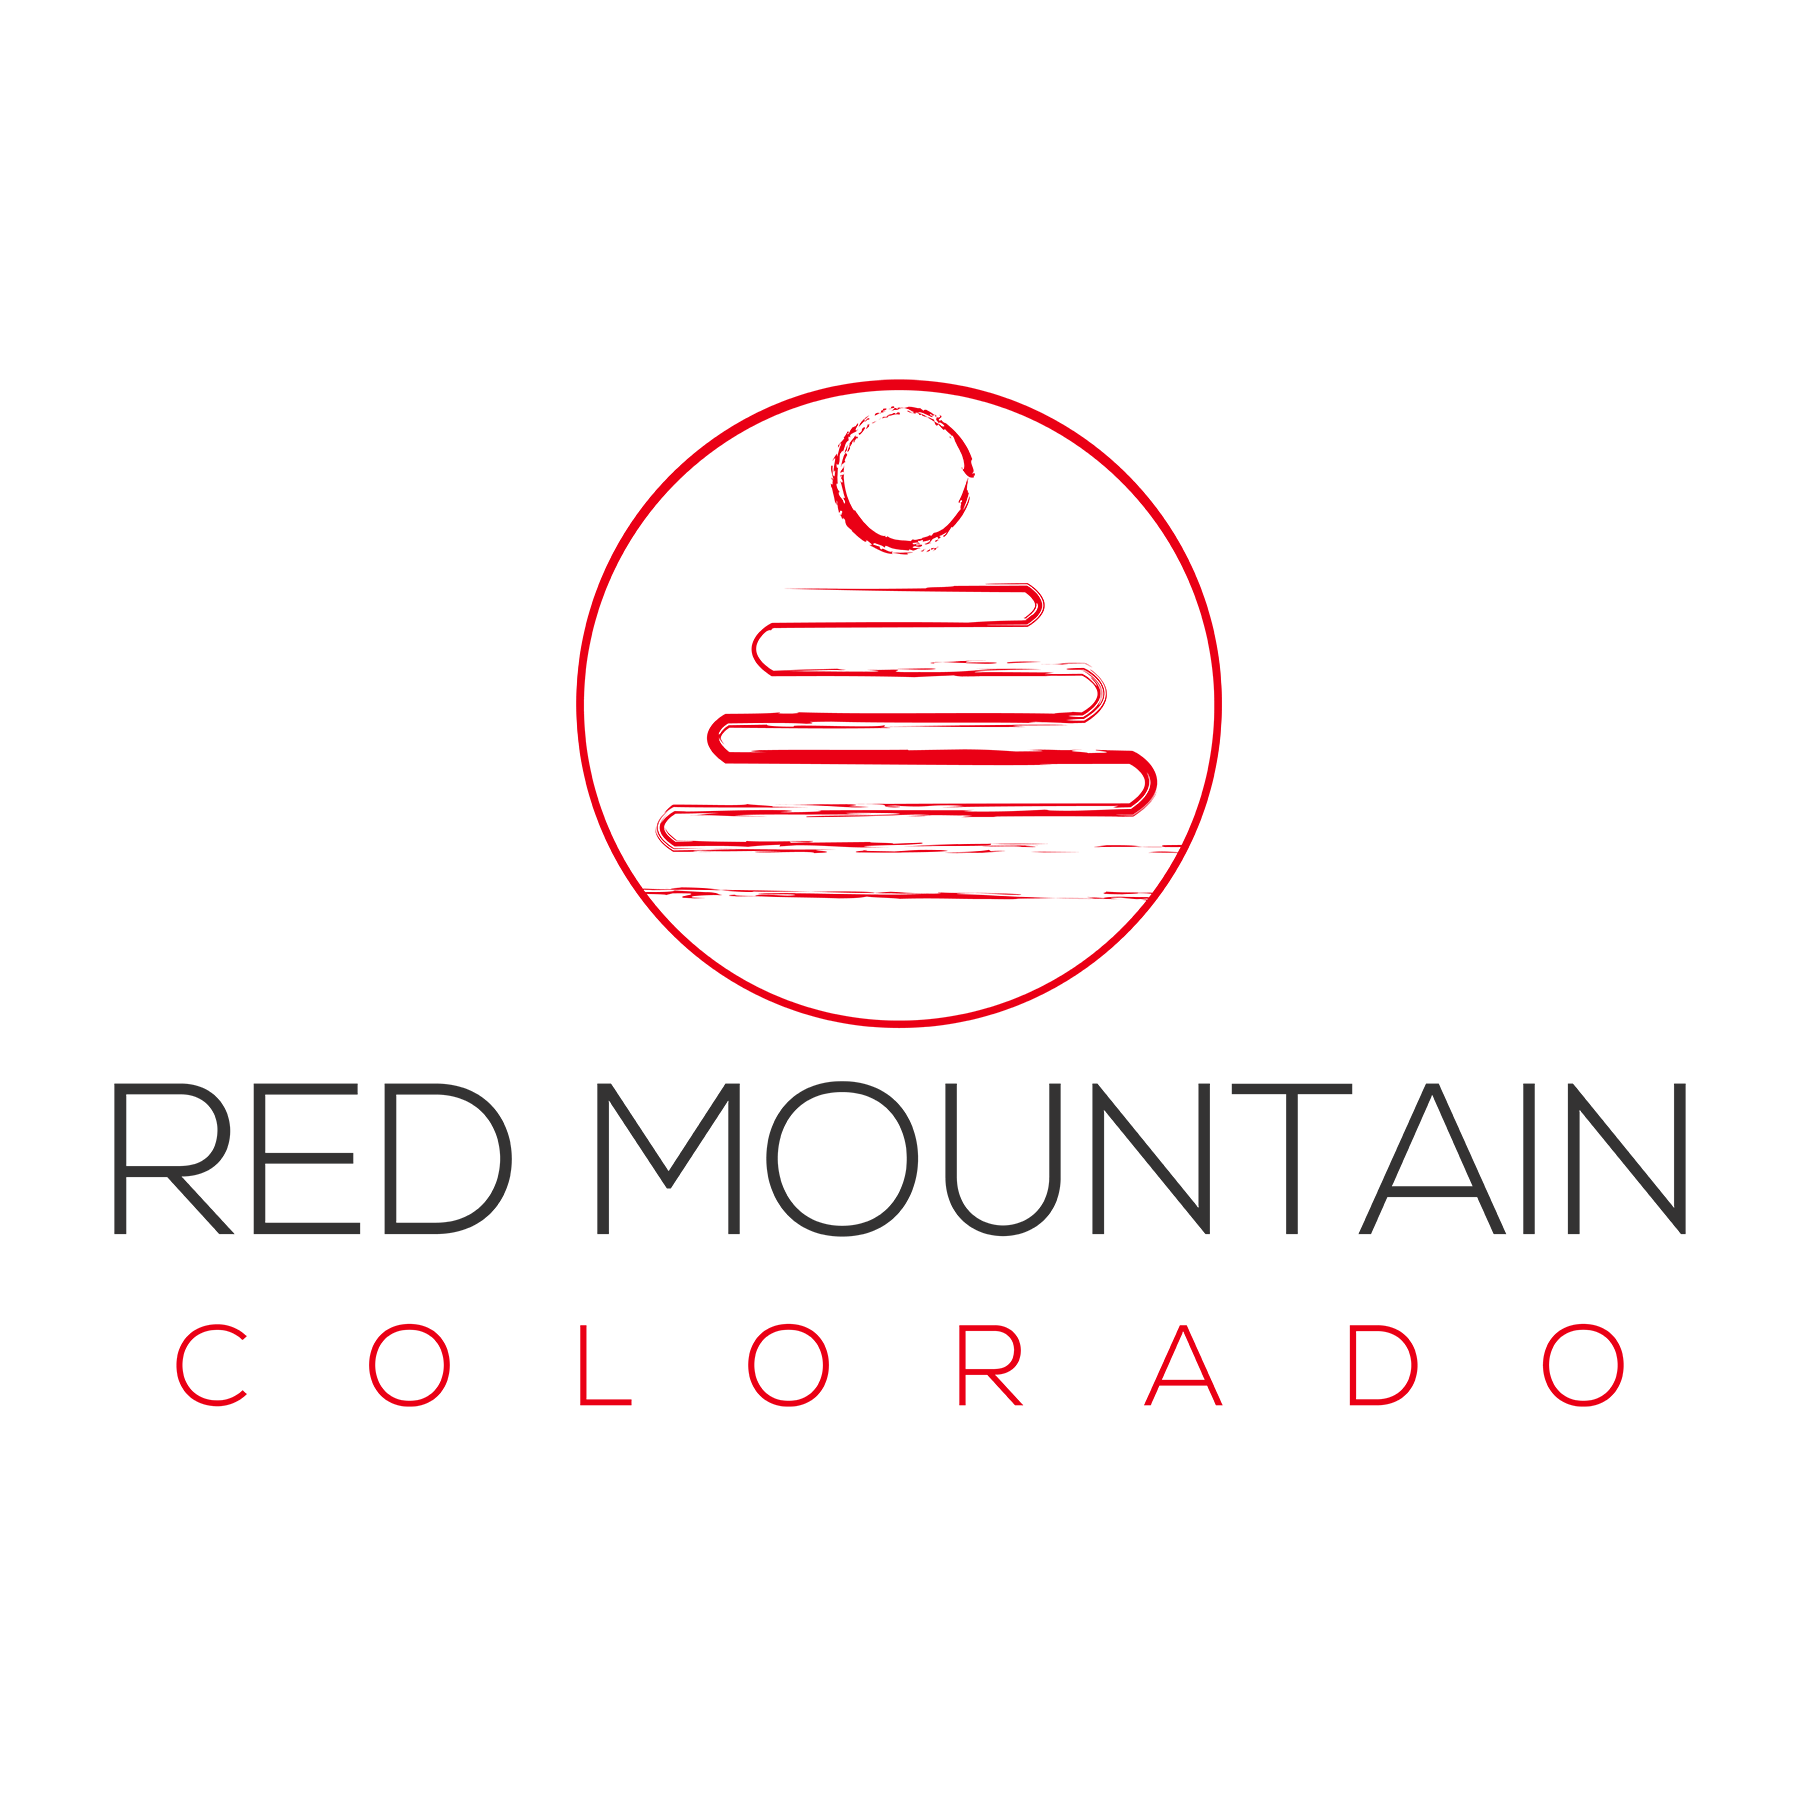 Red Mountain Colorado logo